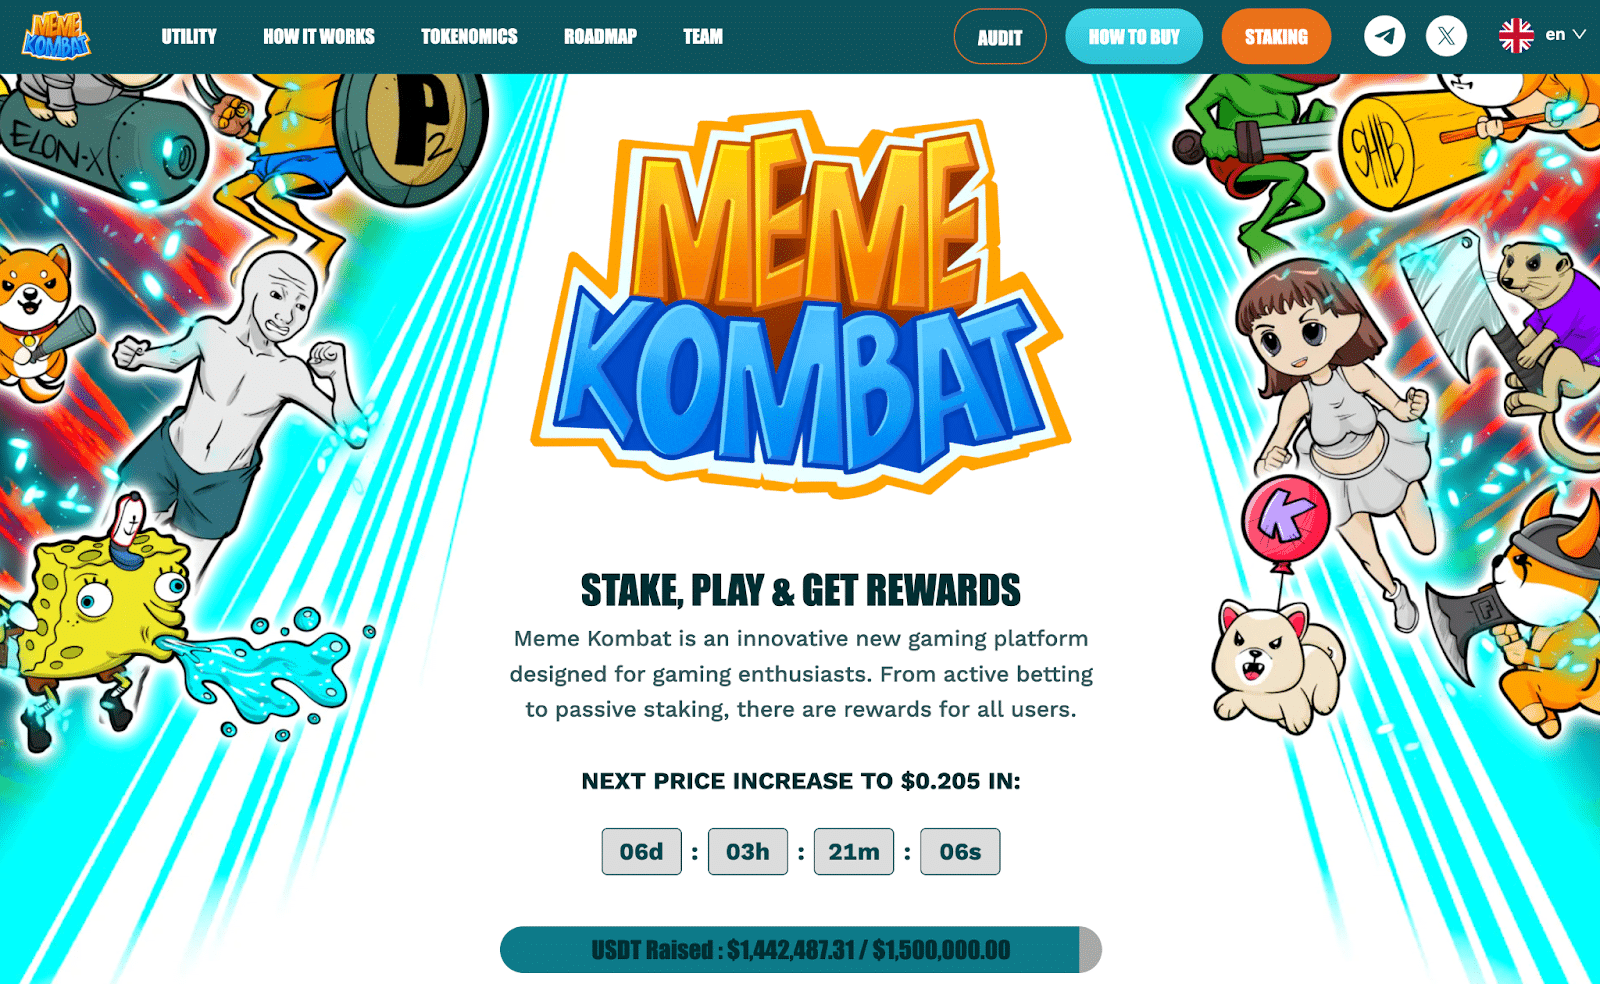 黄金甲体育官网Pepe币价格上涨25%Meme Kombat在独特的游戏平台上筹集了近150万美元　也许会有100倍的增加